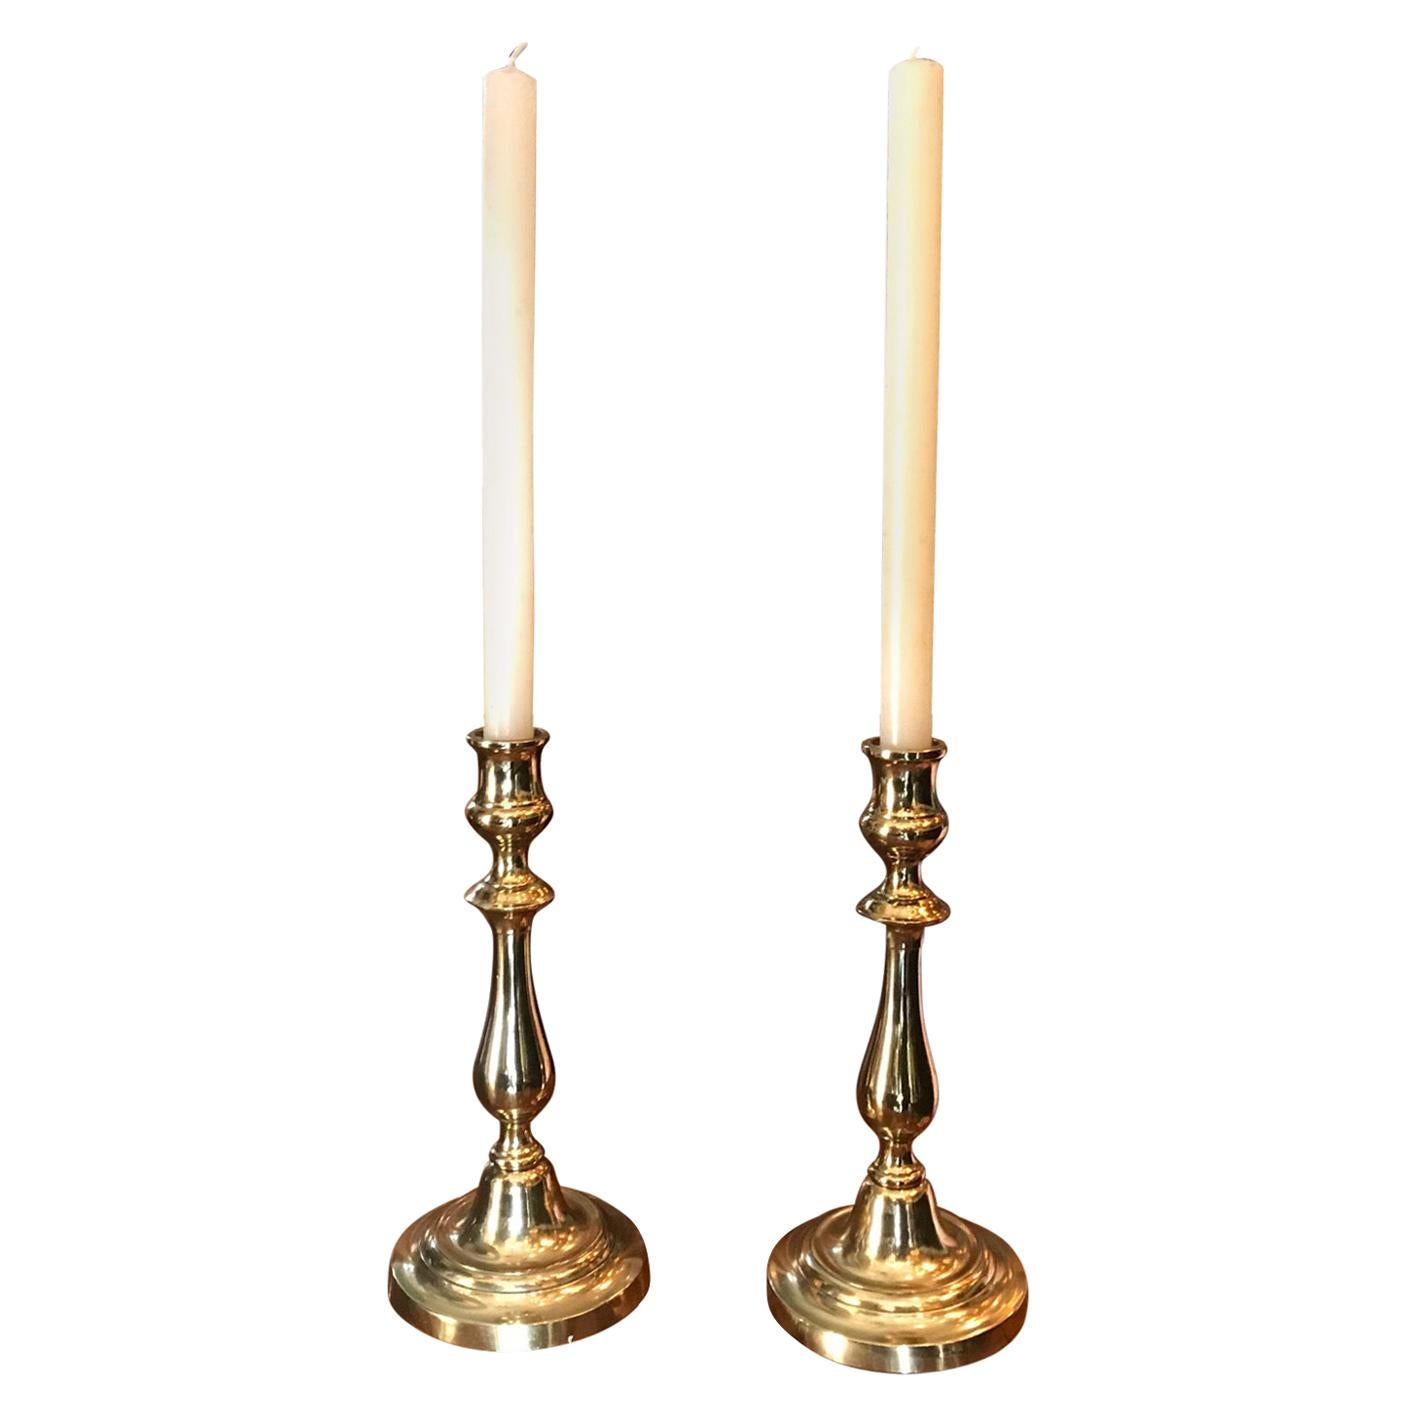 Paar Kerzenständer aus Messing mit antikem Objekt-Deko-Akzent